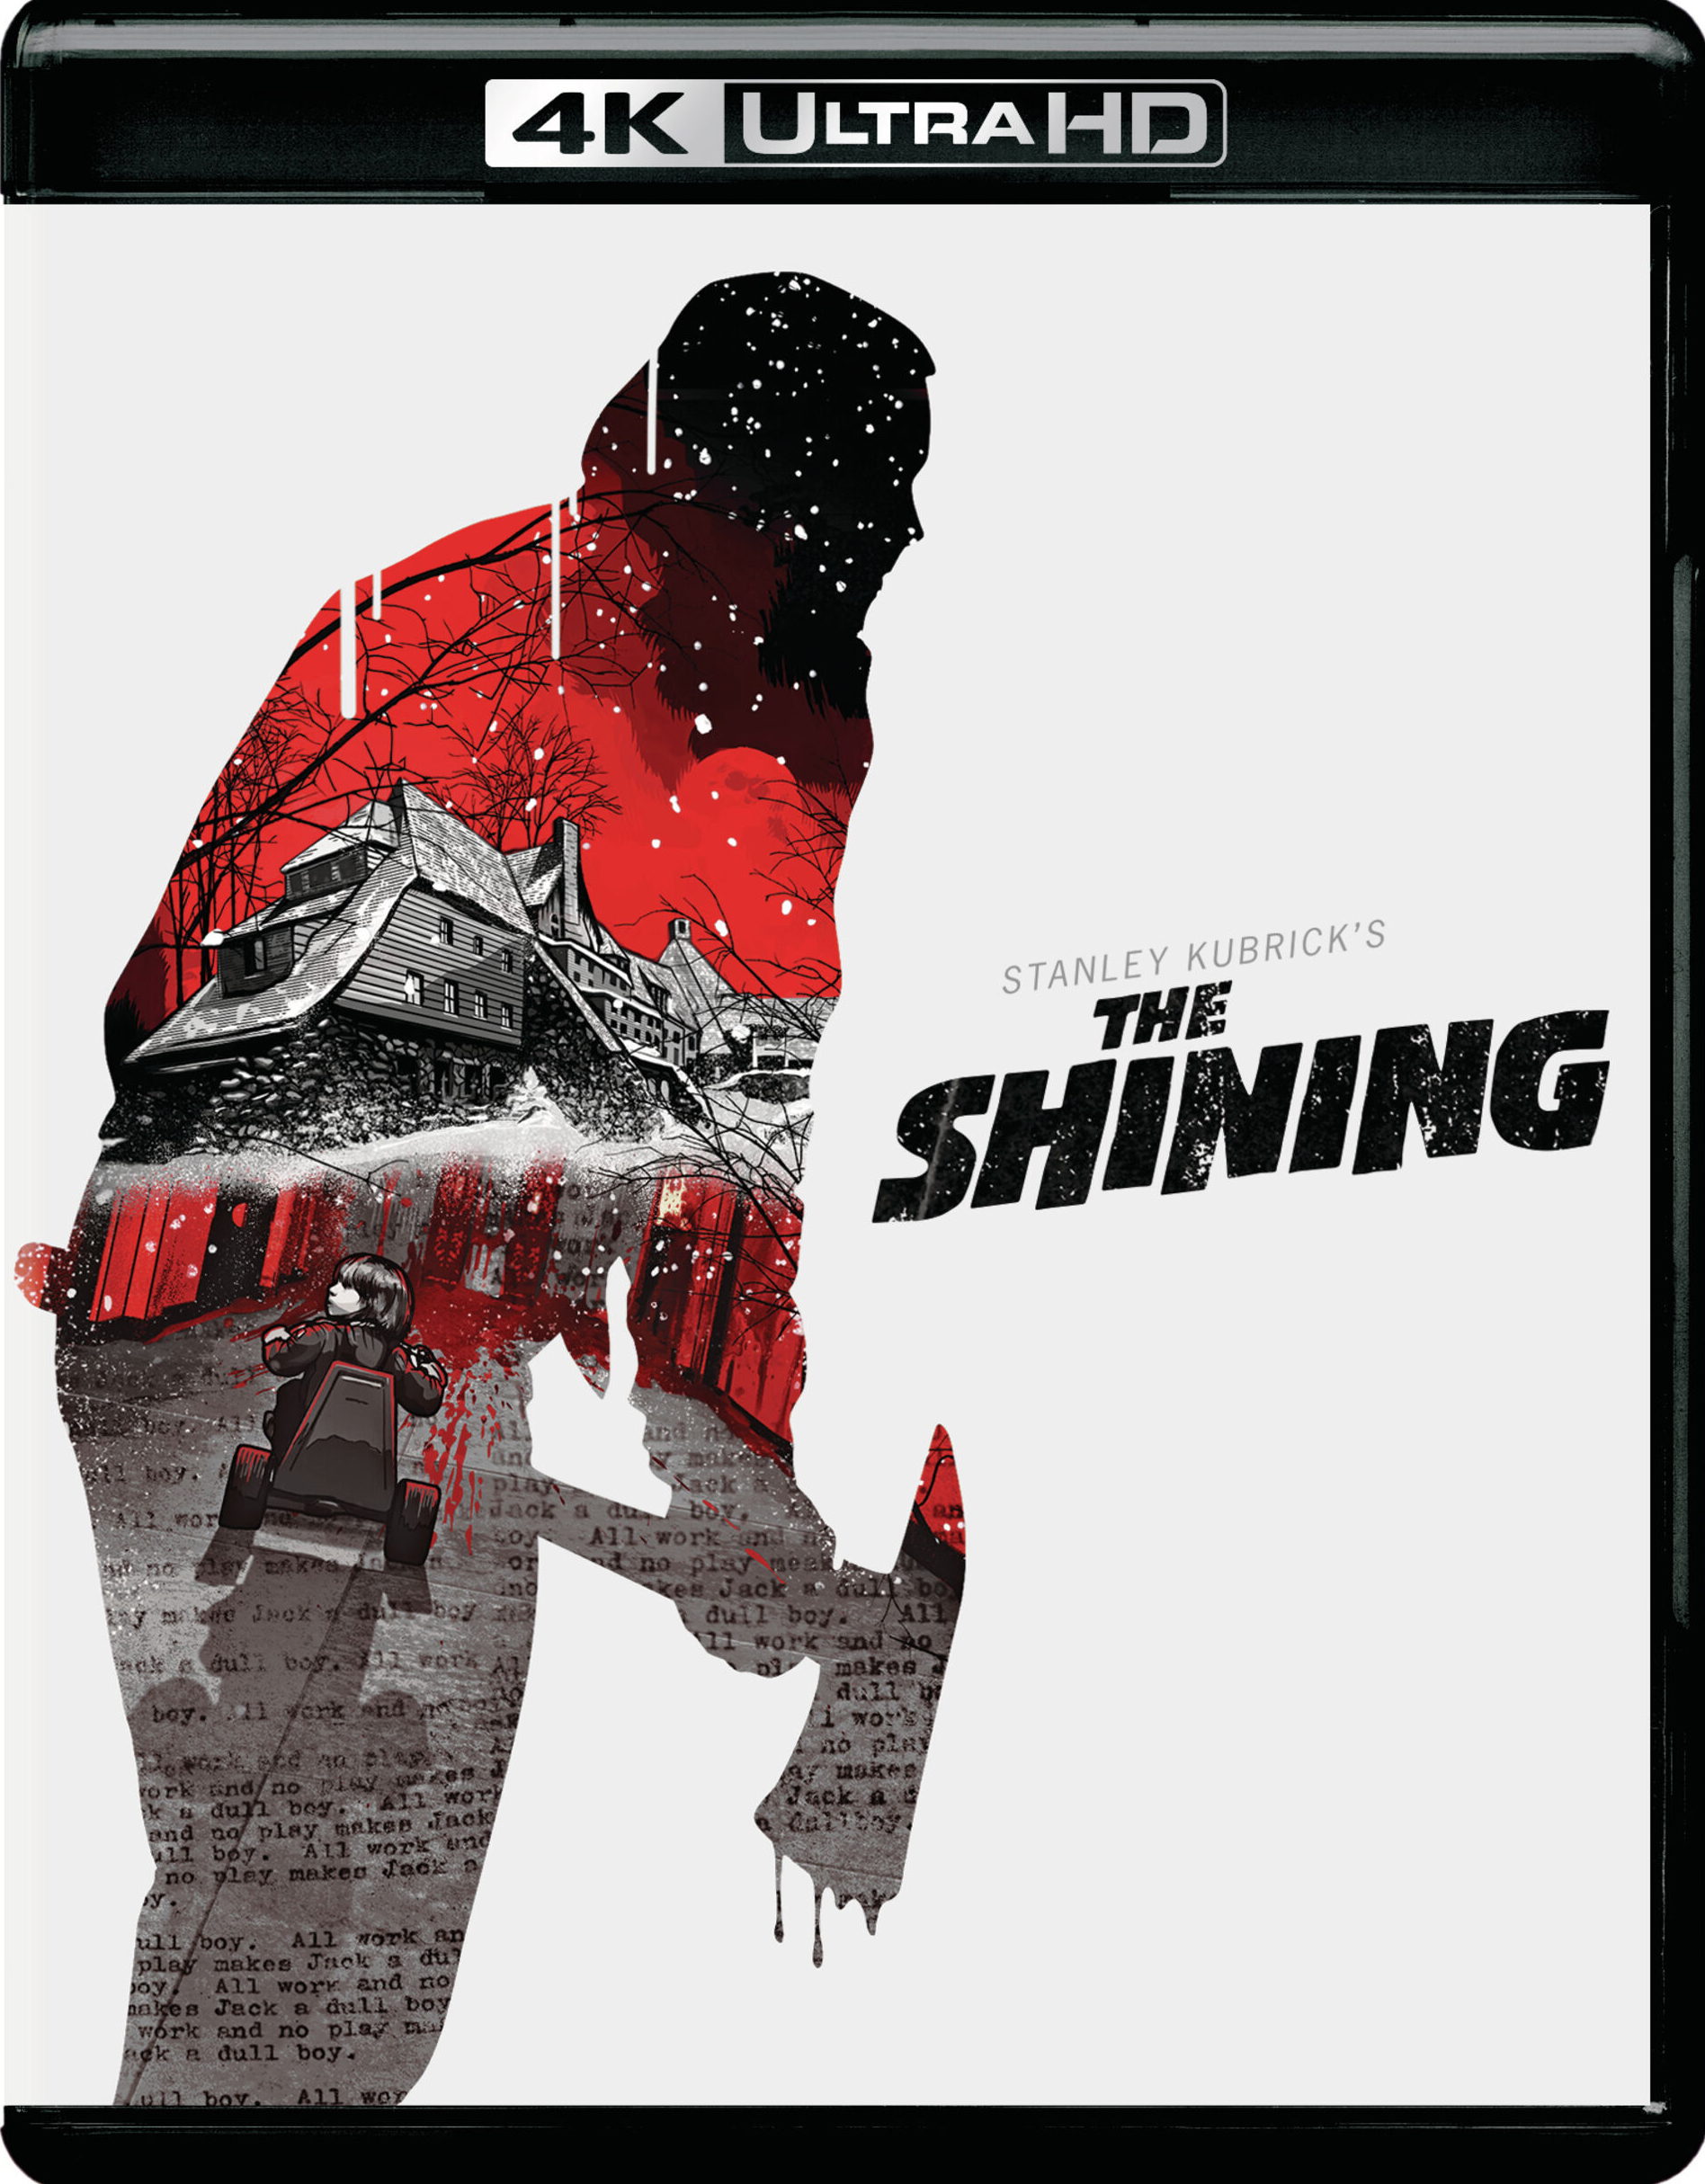 The Shining - 4K